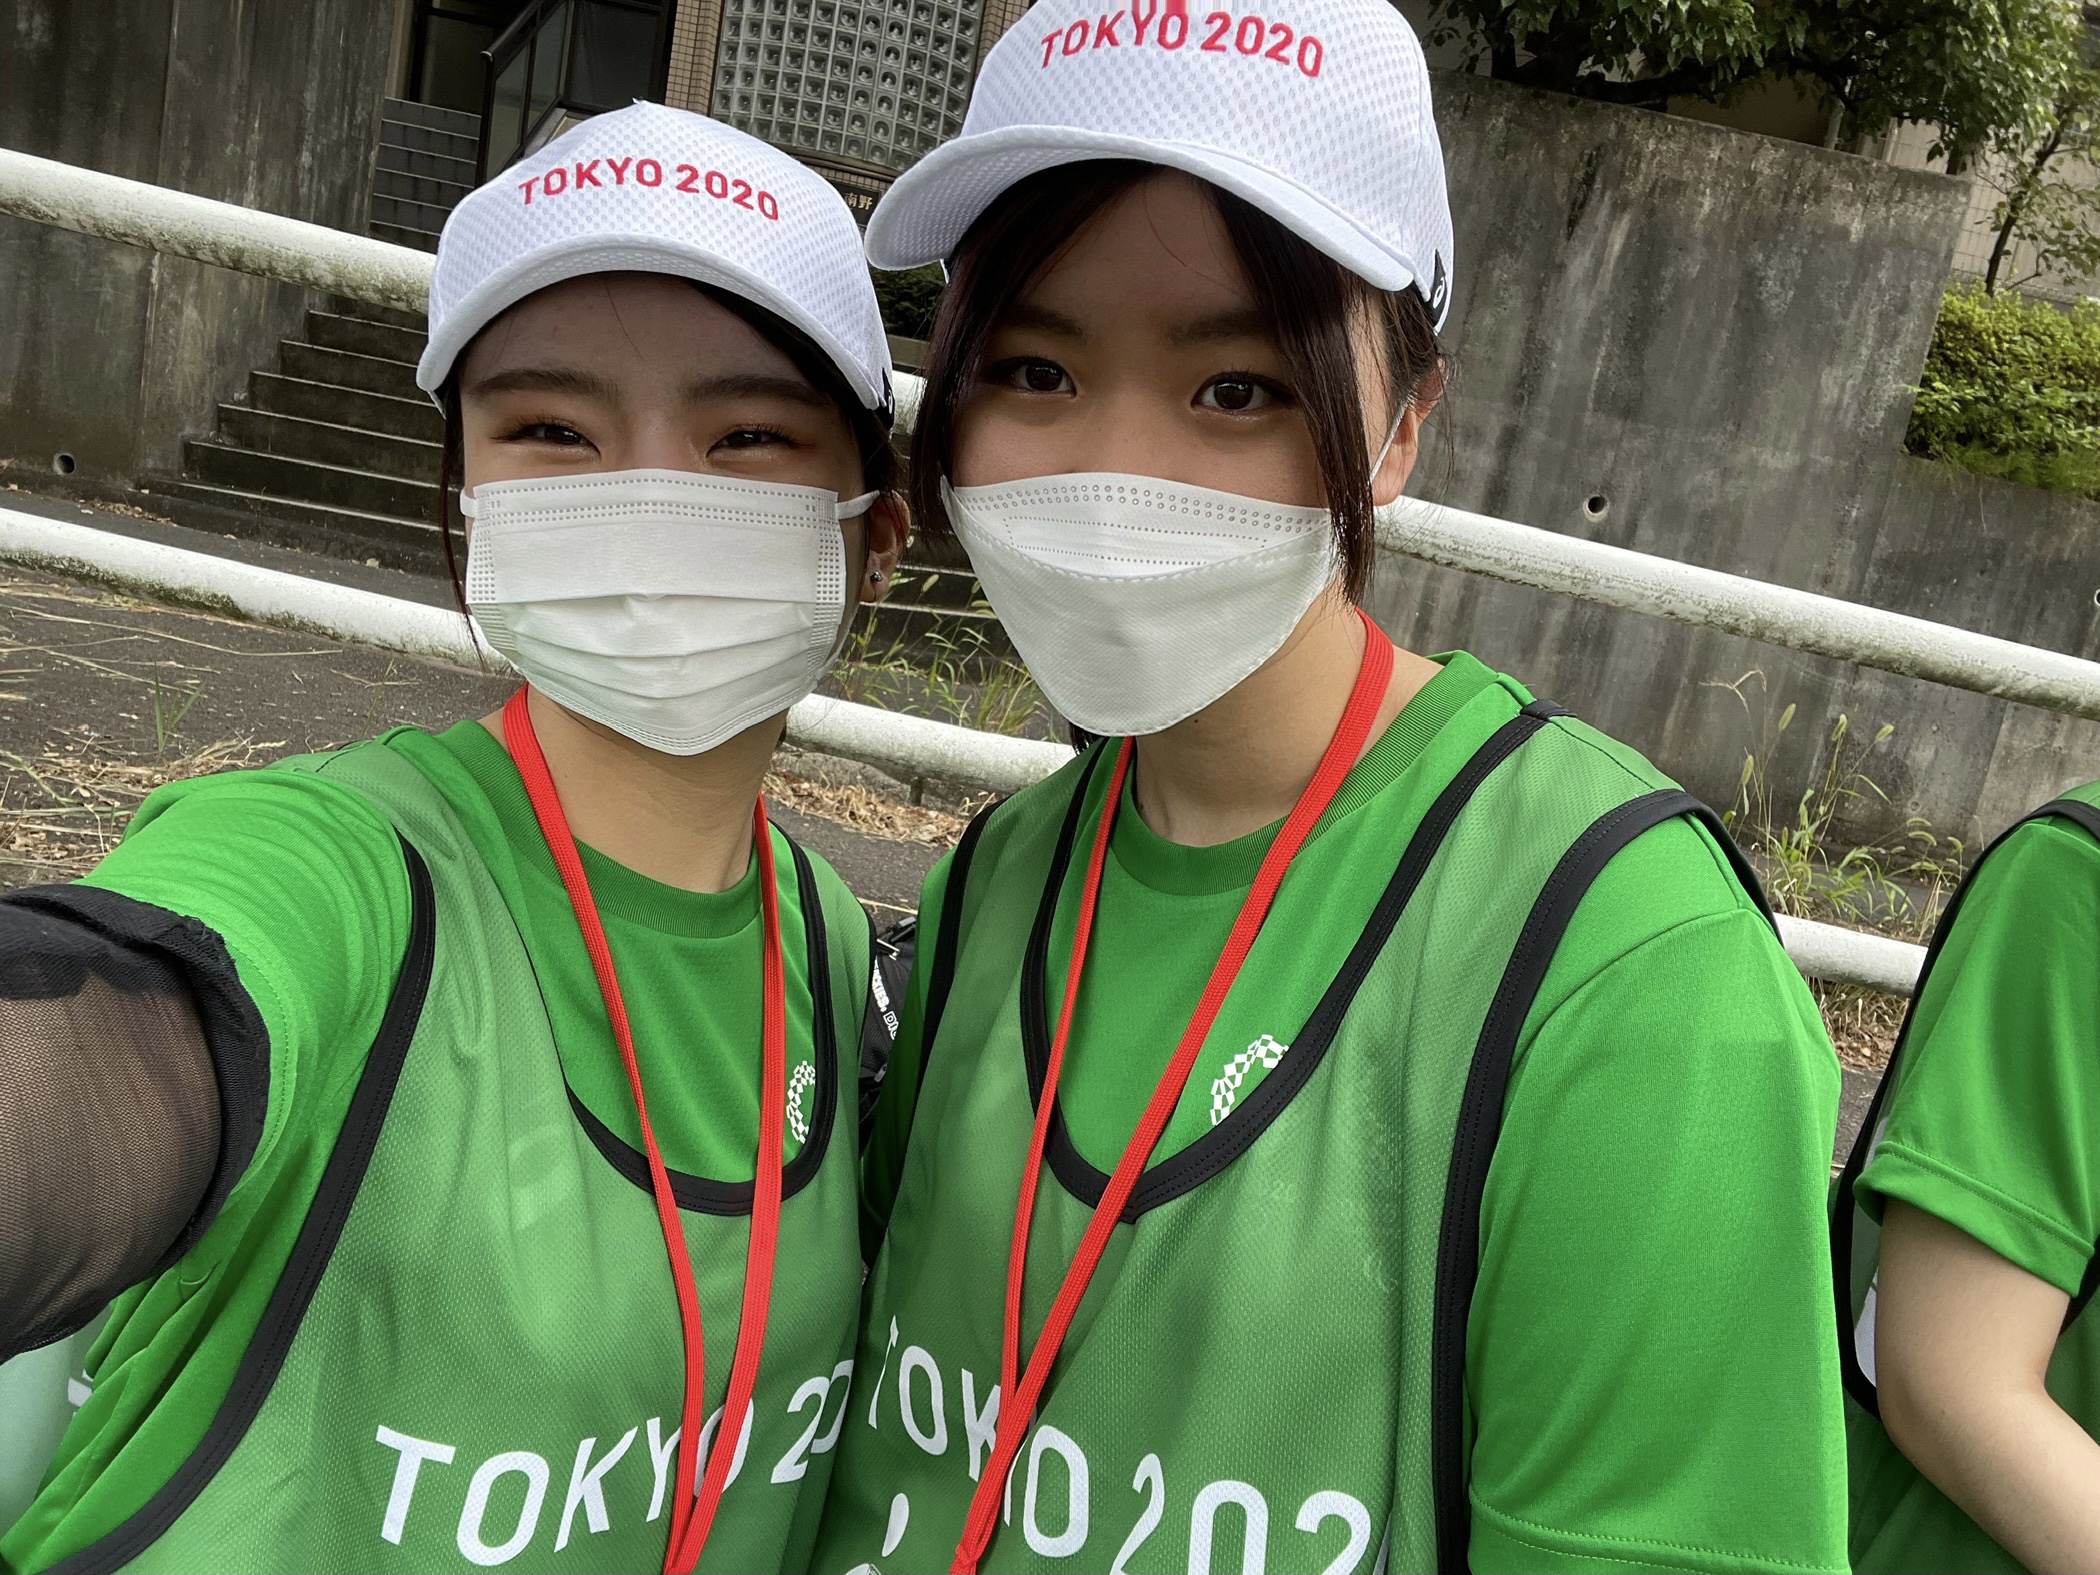 東京オリンピック2020 ボランティア 帽子 うのにもお得な情報